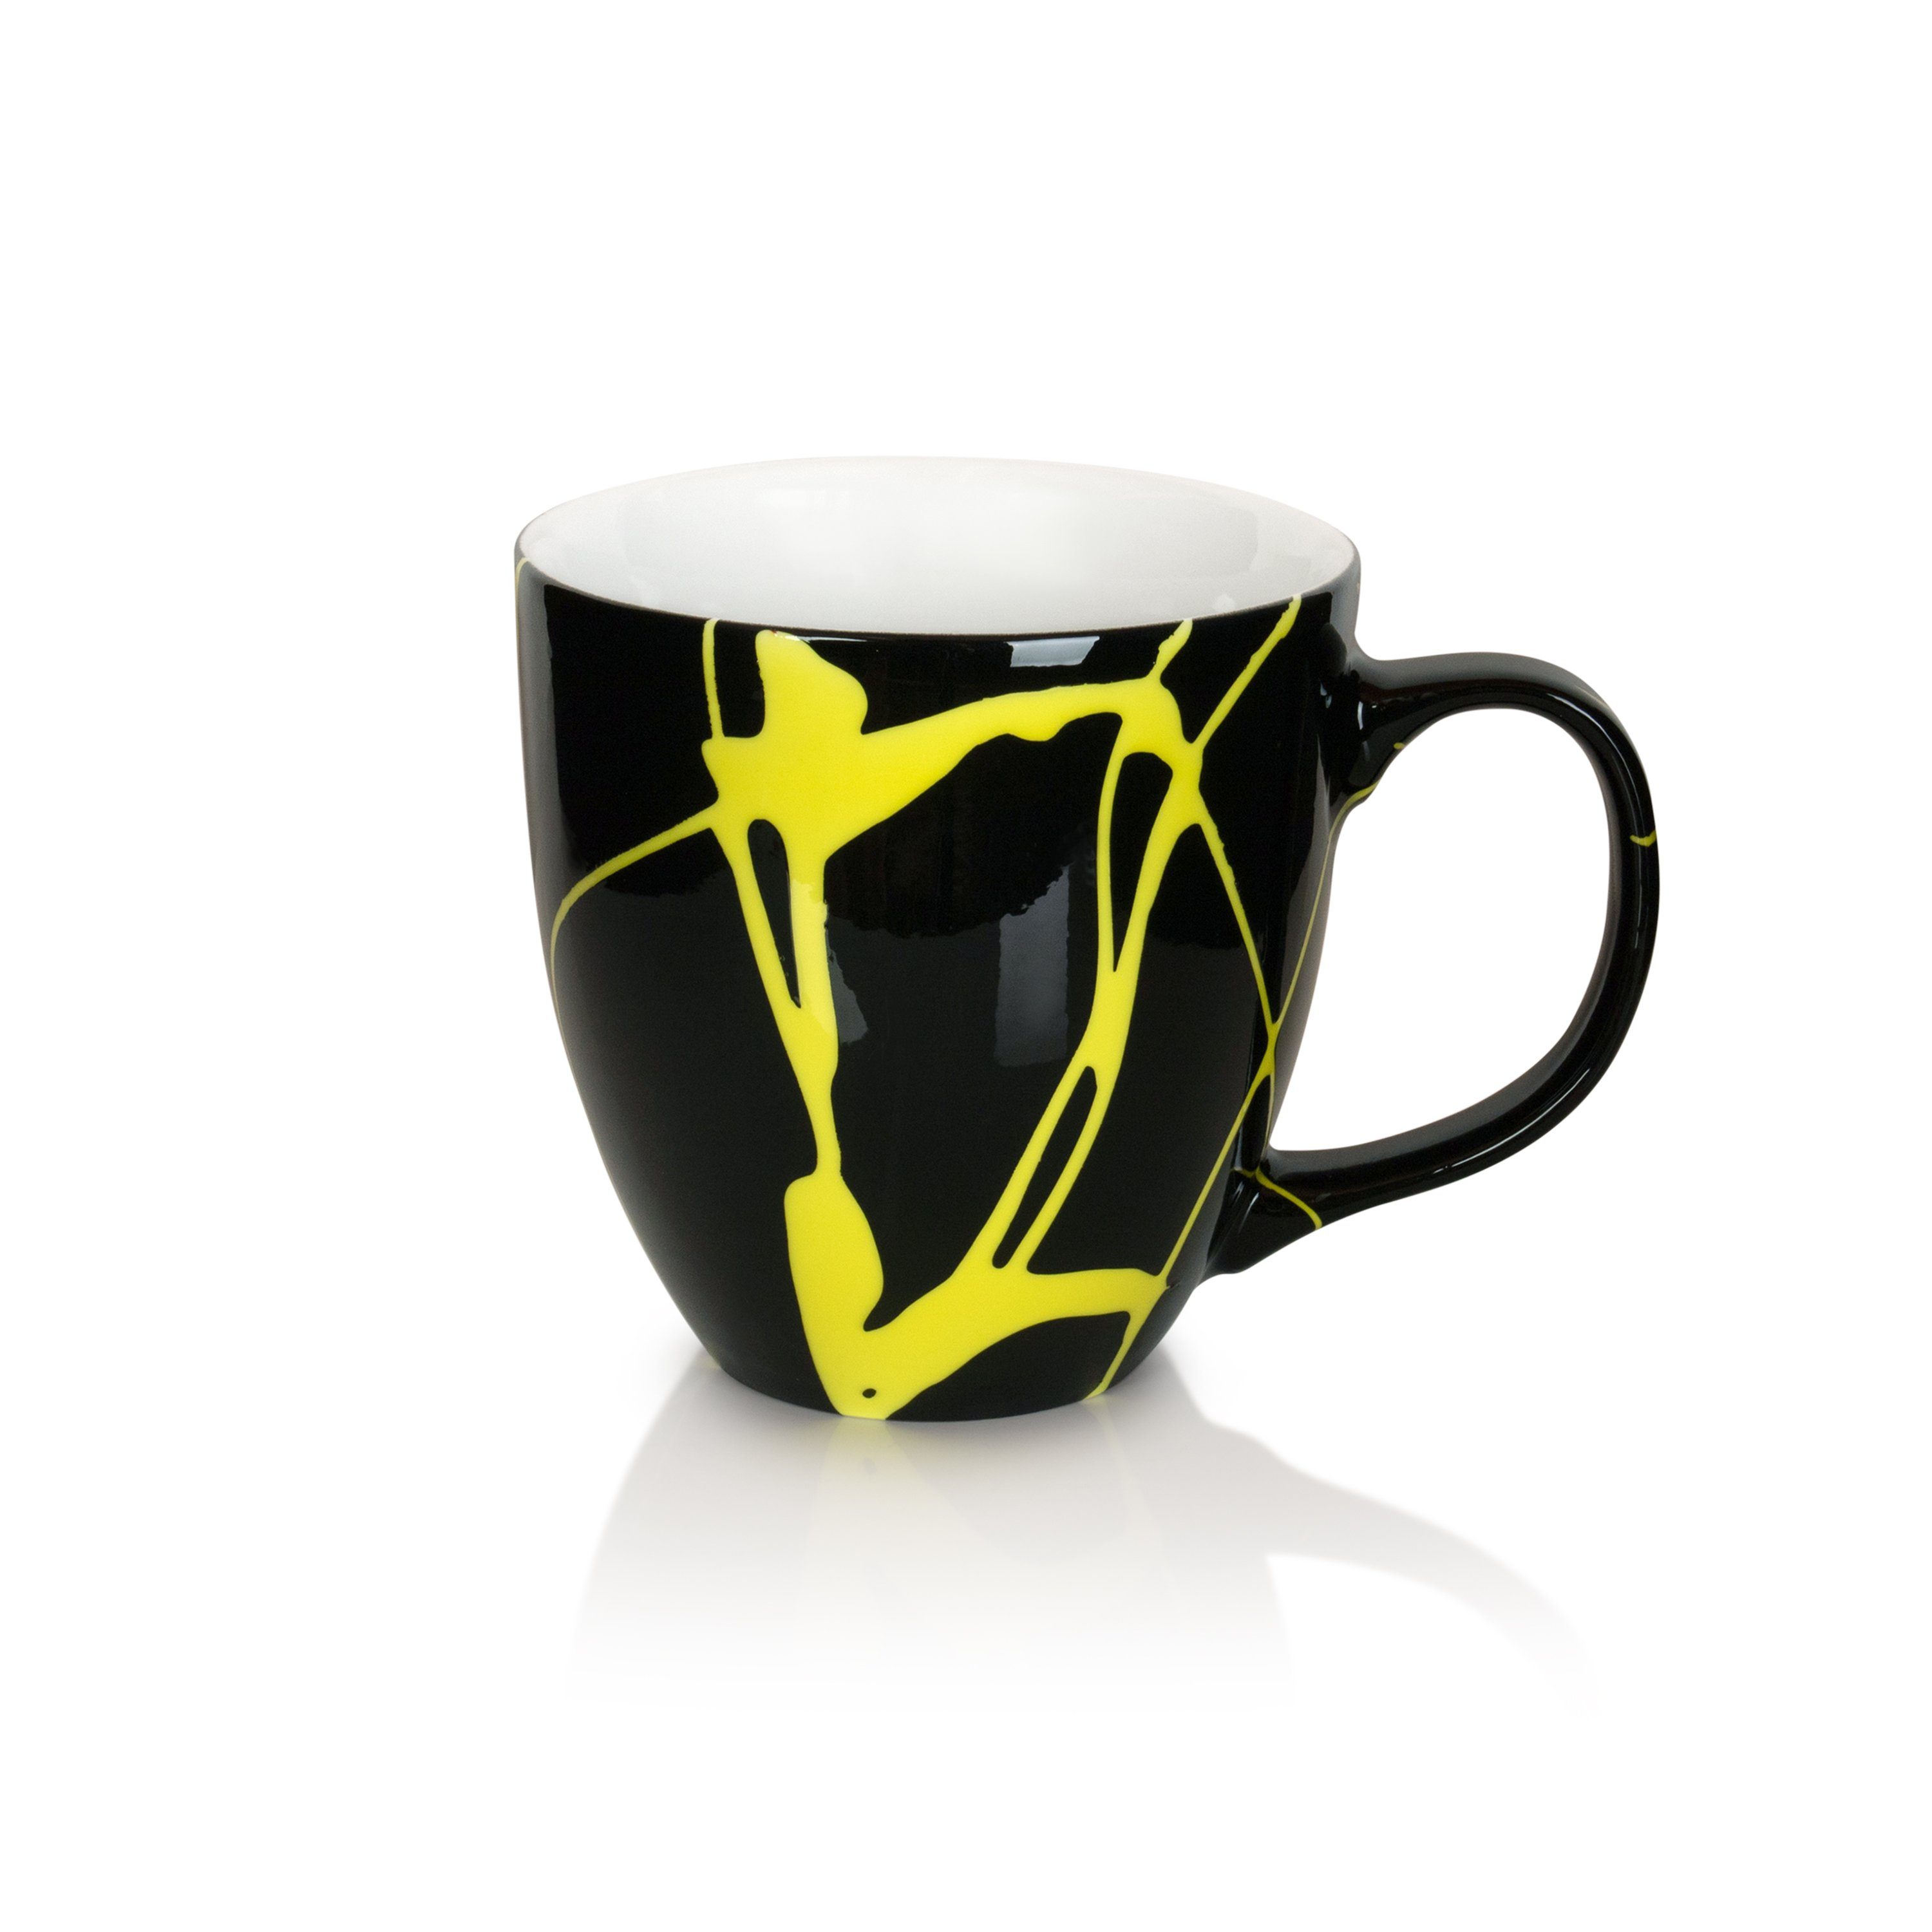 Mahlwerck Manufaktur Teeschale Jumbotasse, Porzellan, 100% klimaneutral Freaky Yellow